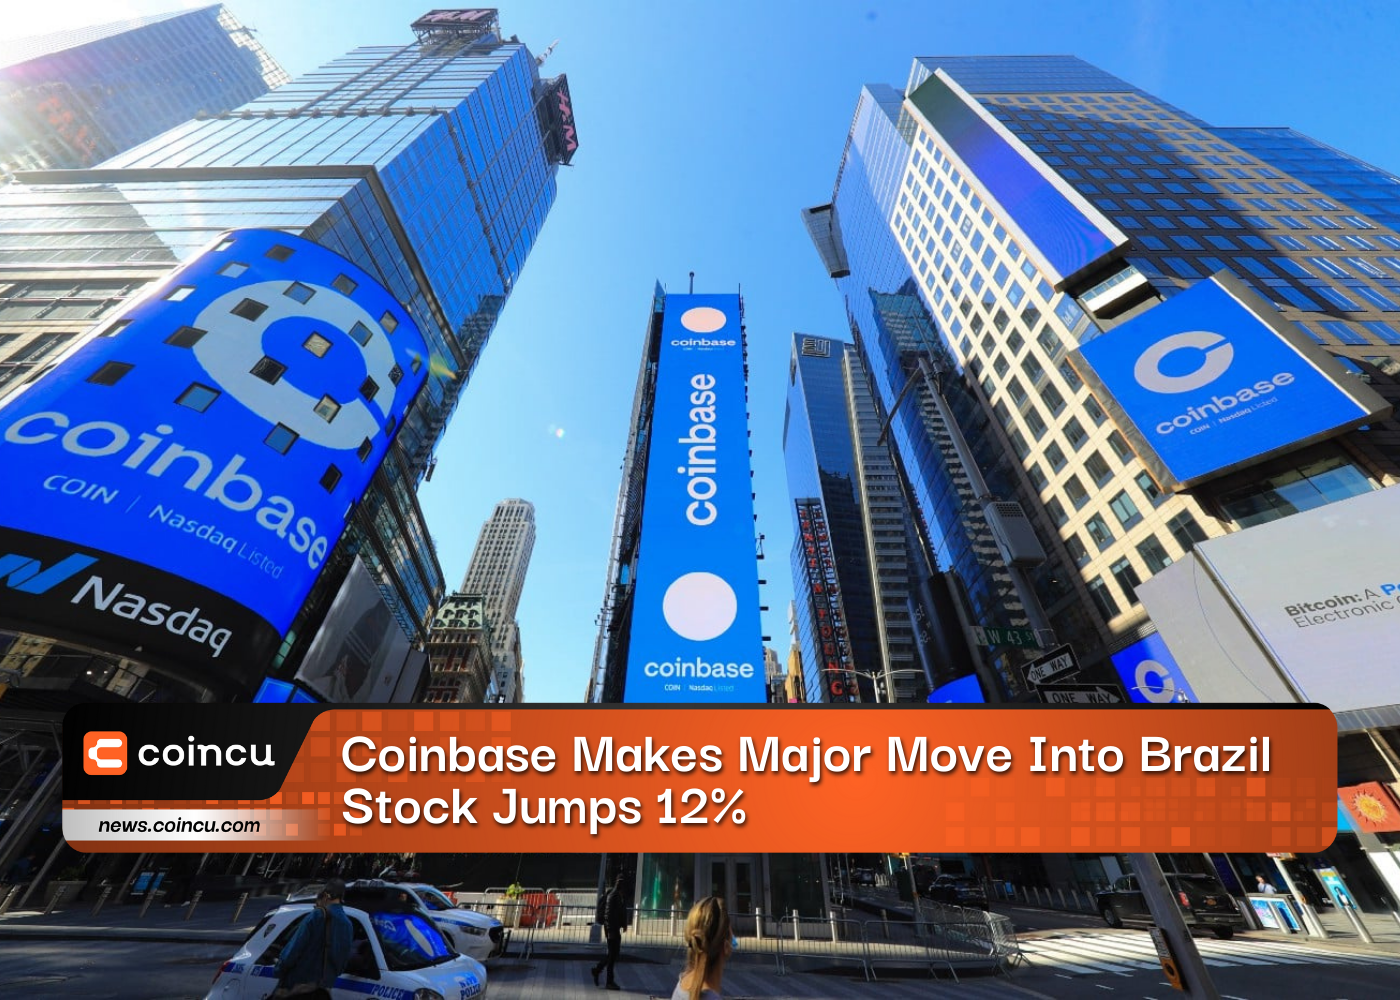 Coinbase Makes Major Move Into Brazil